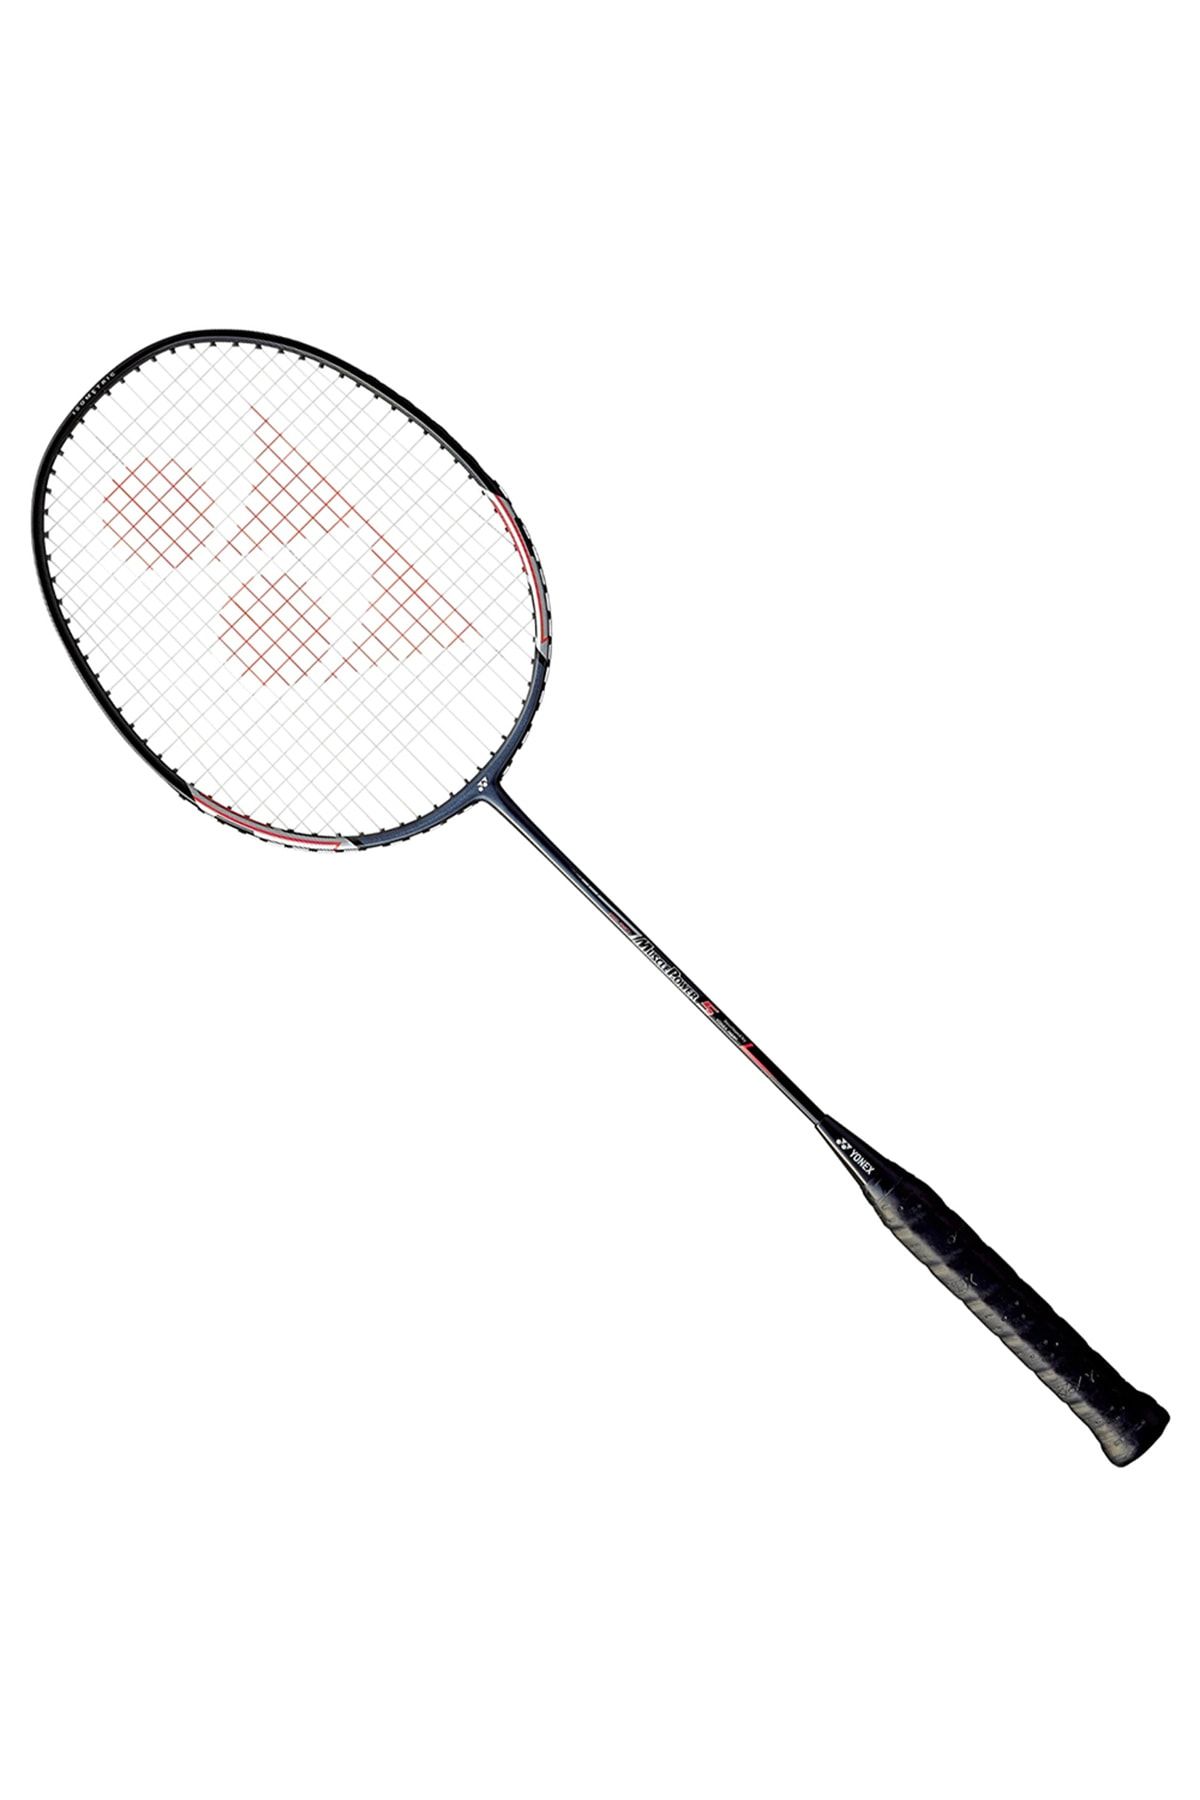 Yonex Mp-5 Aluminyum Badminton Raketi Siyah